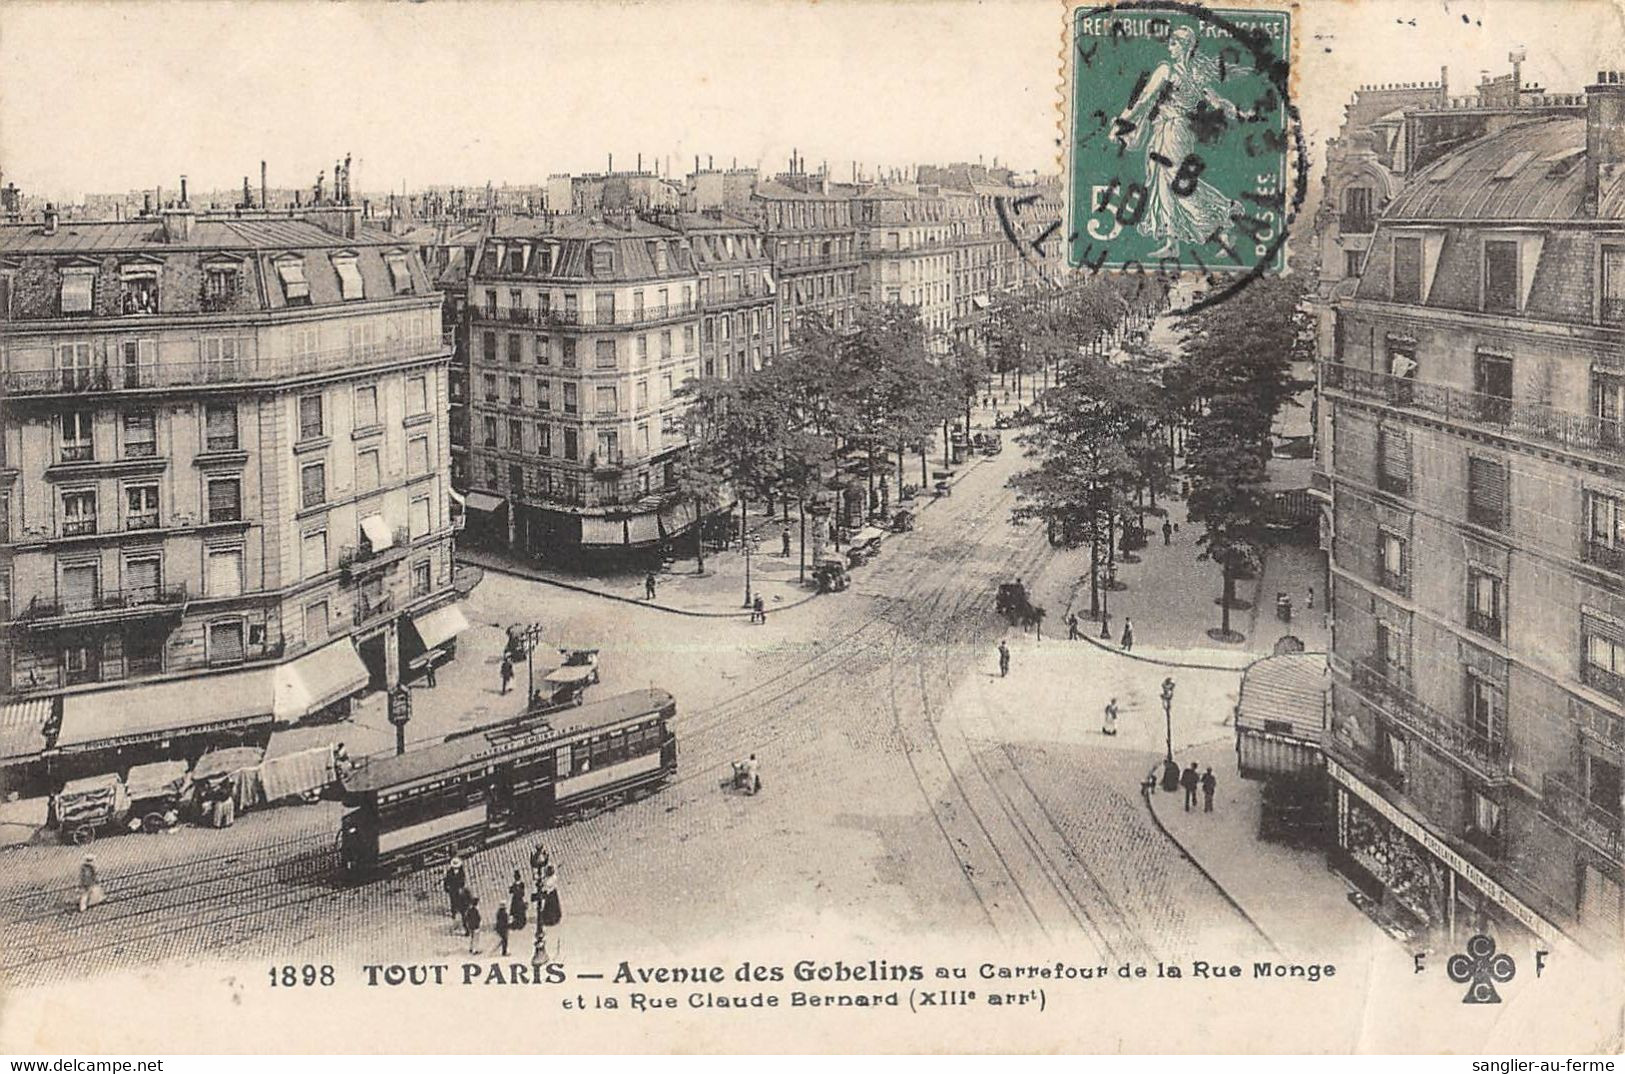 CPA 75 TOUT PARIS / PARIS 13e / AVENUE DES GOBELINS AU CARREFOUR DE LA RUE MONGE CLAUDE BERNARD - Paris (13)